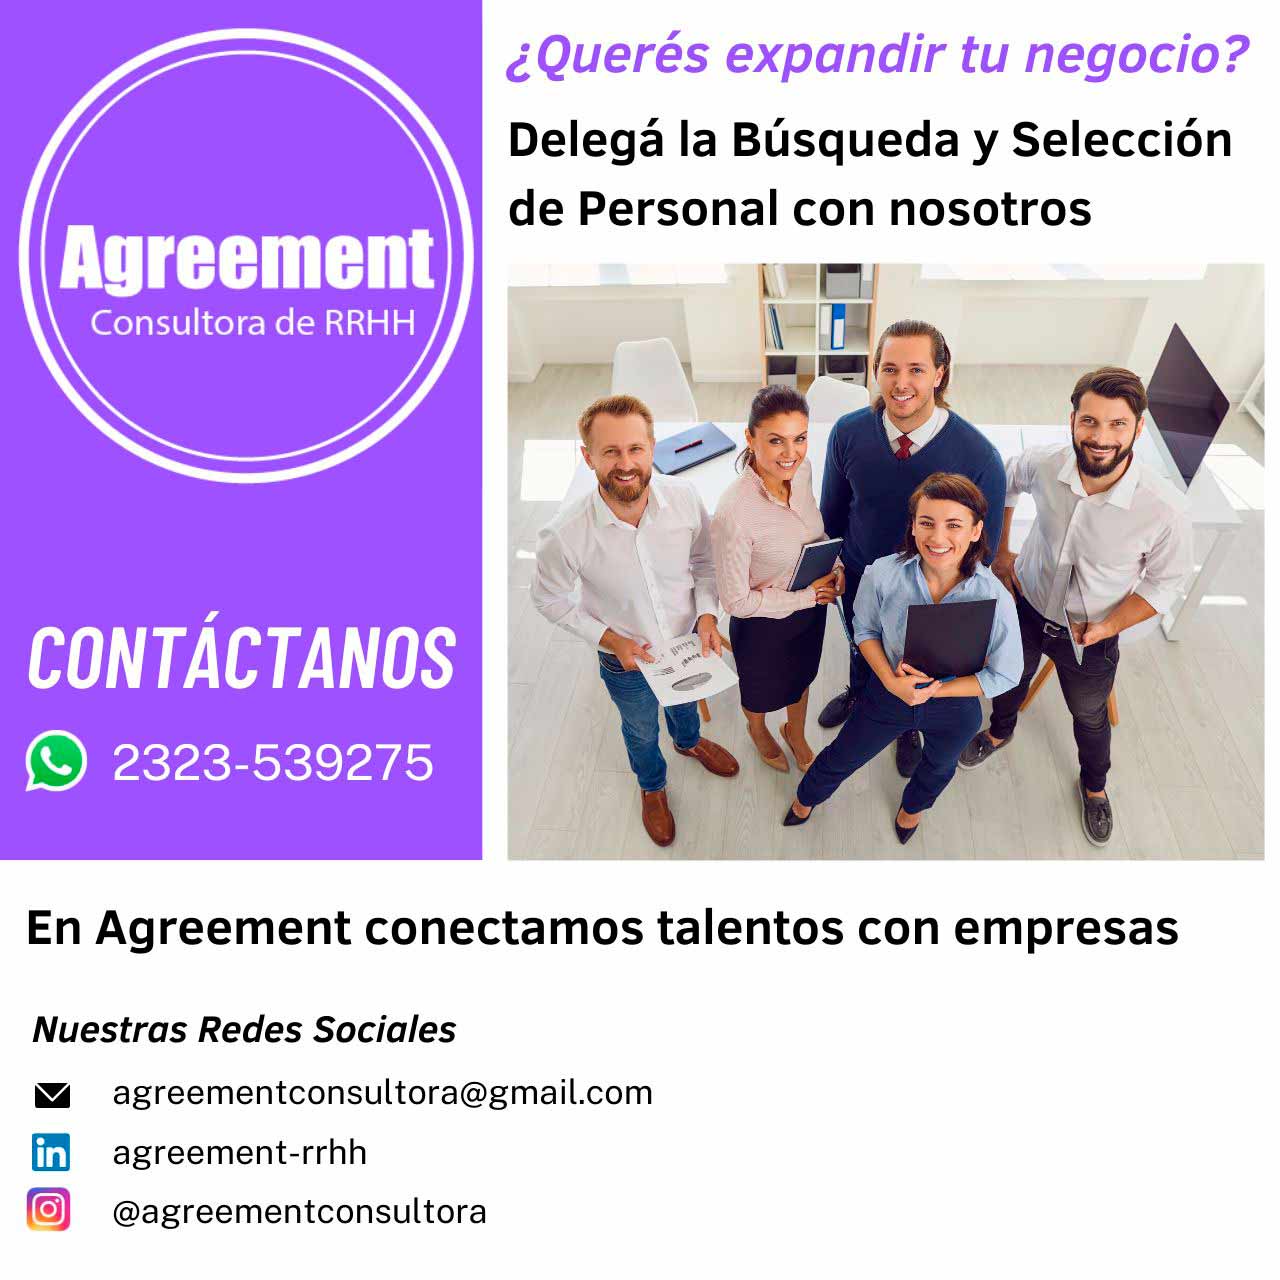 Agreement Consultora